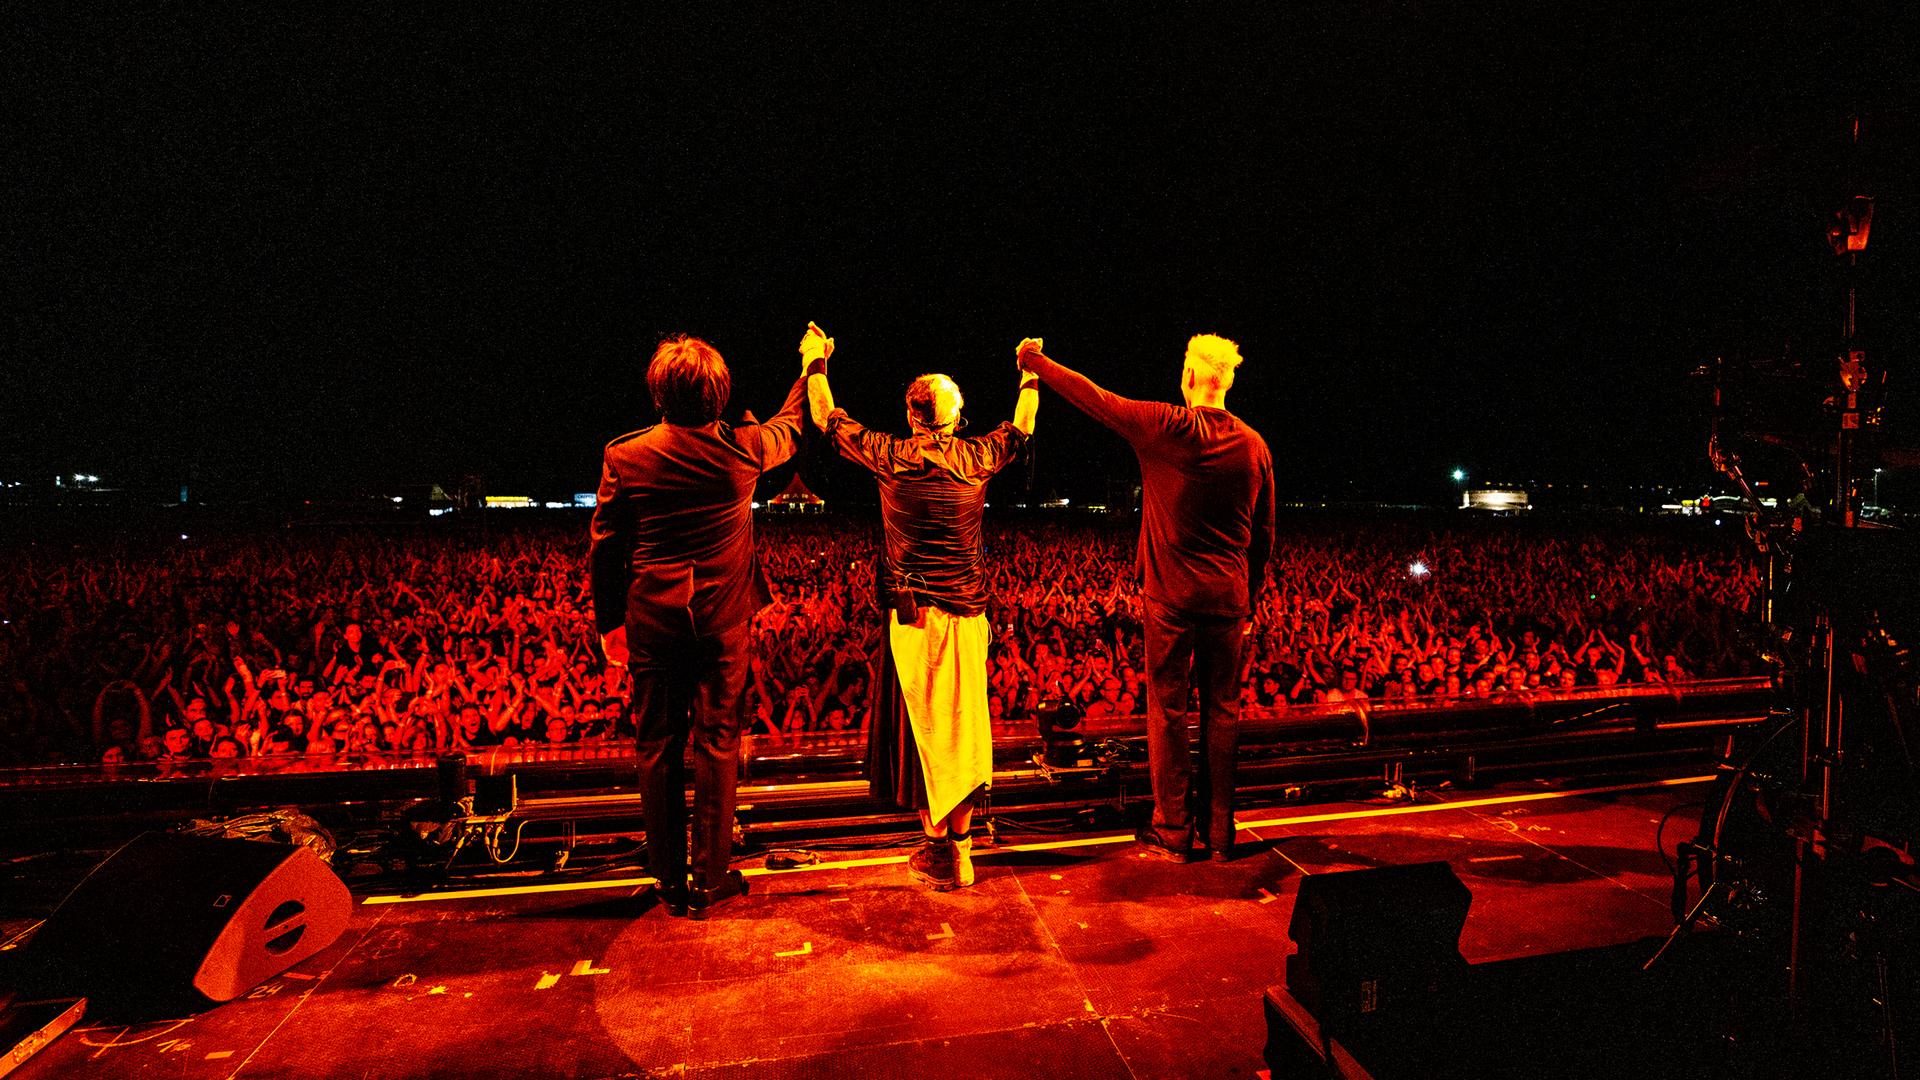 Drei Mitglieder der Band "Die Ärzte" sind von hinten zu sehen. Sie stehen auf einer Bühne und halten sich an den Händen, um sich vor einem großen Publikum zu verbeugen.